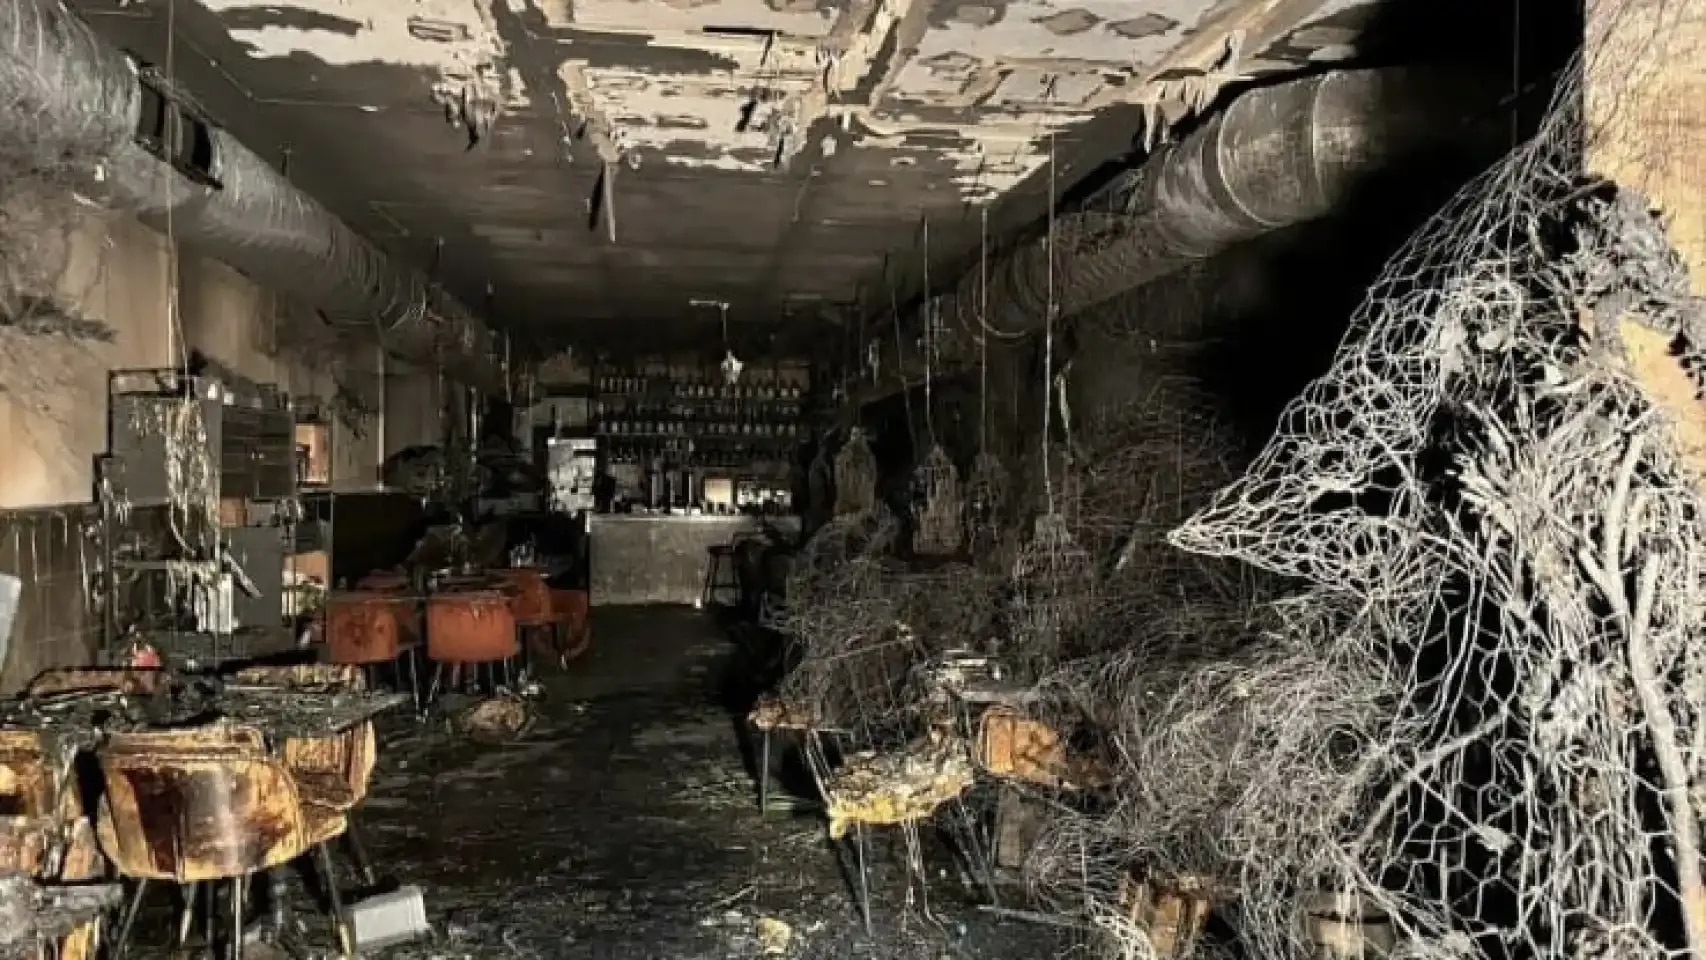 El restaurante Burro Canaglia de Madrid tras el incendio. A la derecha se pueden observar las mallas metálicas que sujetaban las plantas del techo